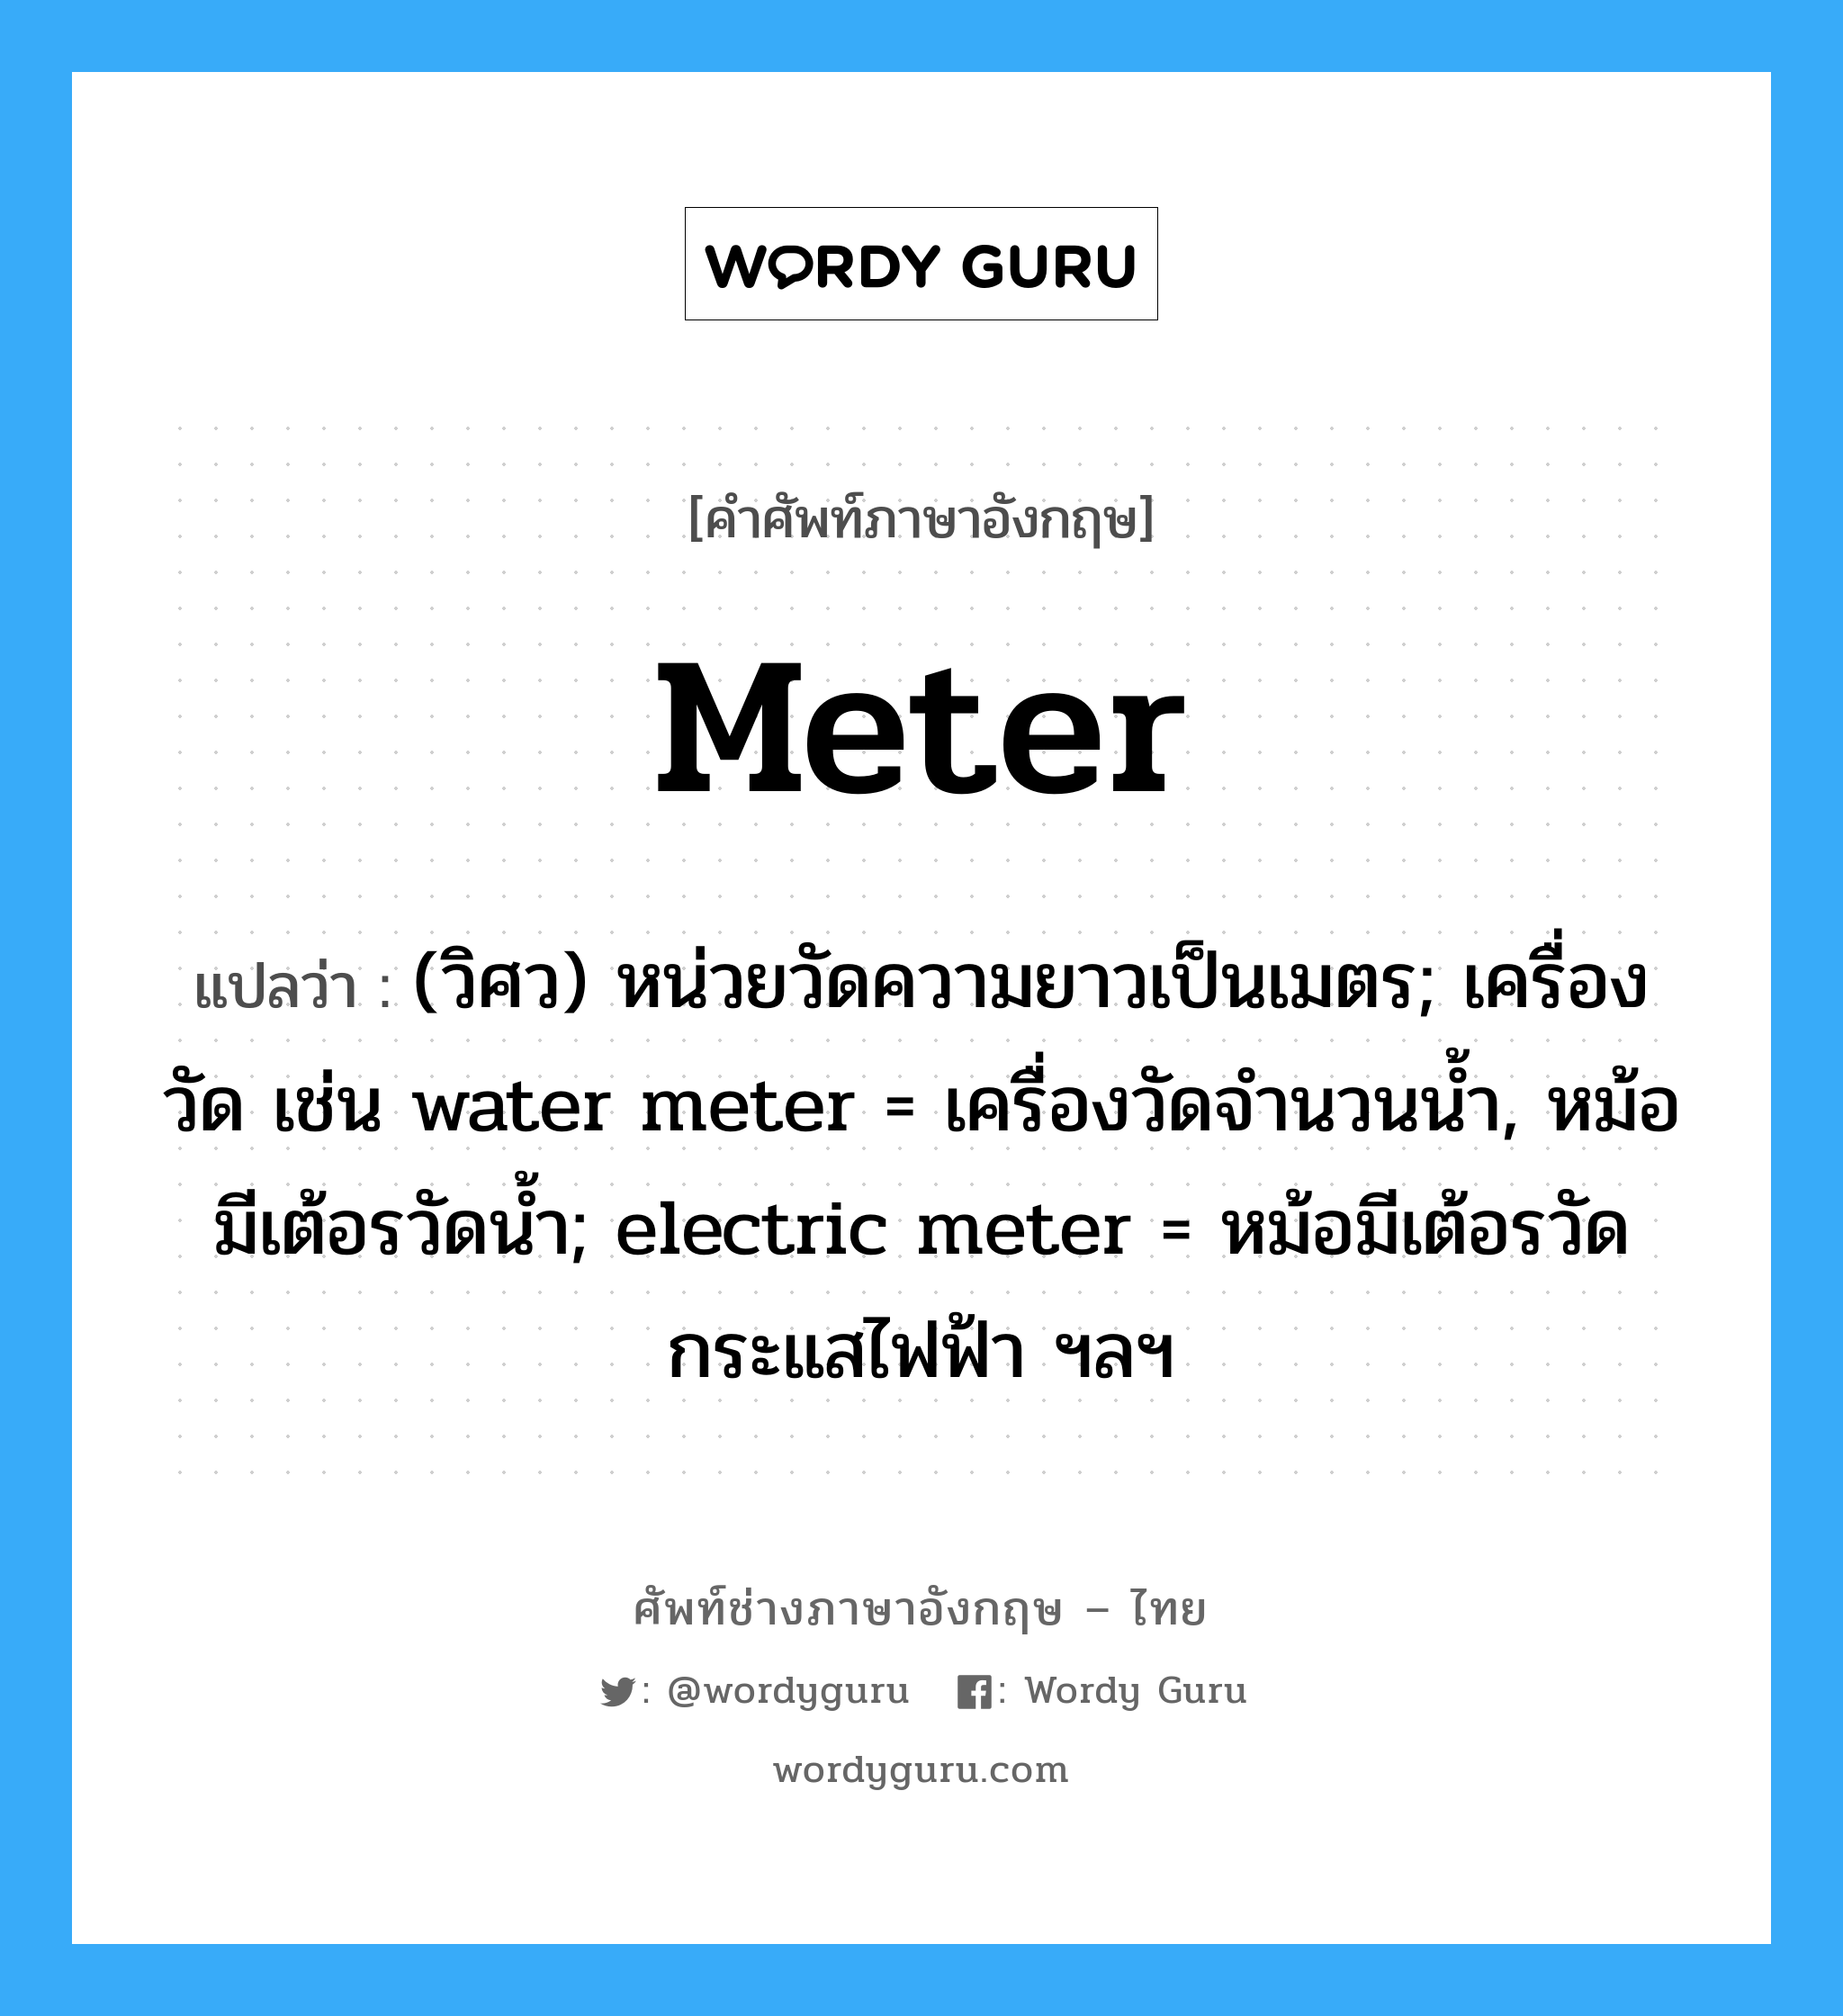 (วิศว) หน่วยวัดความยาวเป็นเมตร; เครื่องวัด เช่น water meter = เครื่องวัดจำนวนน้ำ, หม้อมีเต้อรวัดน้ำ; electric meter = หม้อมีเต้อรวัดกระแสไฟฟ้า ฯลฯ ภาษาอังกฤษ?, คำศัพท์ช่างภาษาอังกฤษ - ไทย (วิศว) หน่วยวัดความยาวเป็นเมตร; เครื่องวัด เช่น water meter = เครื่องวัดจำนวนน้ำ, หม้อมีเต้อรวัดน้ำ; electric meter = หม้อมีเต้อรวัดกระแสไฟฟ้า ฯลฯ คำศัพท์ภาษาอังกฤษ (วิศว) หน่วยวัดความยาวเป็นเมตร; เครื่องวัด เช่น water meter = เครื่องวัดจำนวนน้ำ, หม้อมีเต้อรวัดน้ำ; electric meter = หม้อมีเต้อรวัดกระแสไฟฟ้า ฯลฯ แปลว่า meter